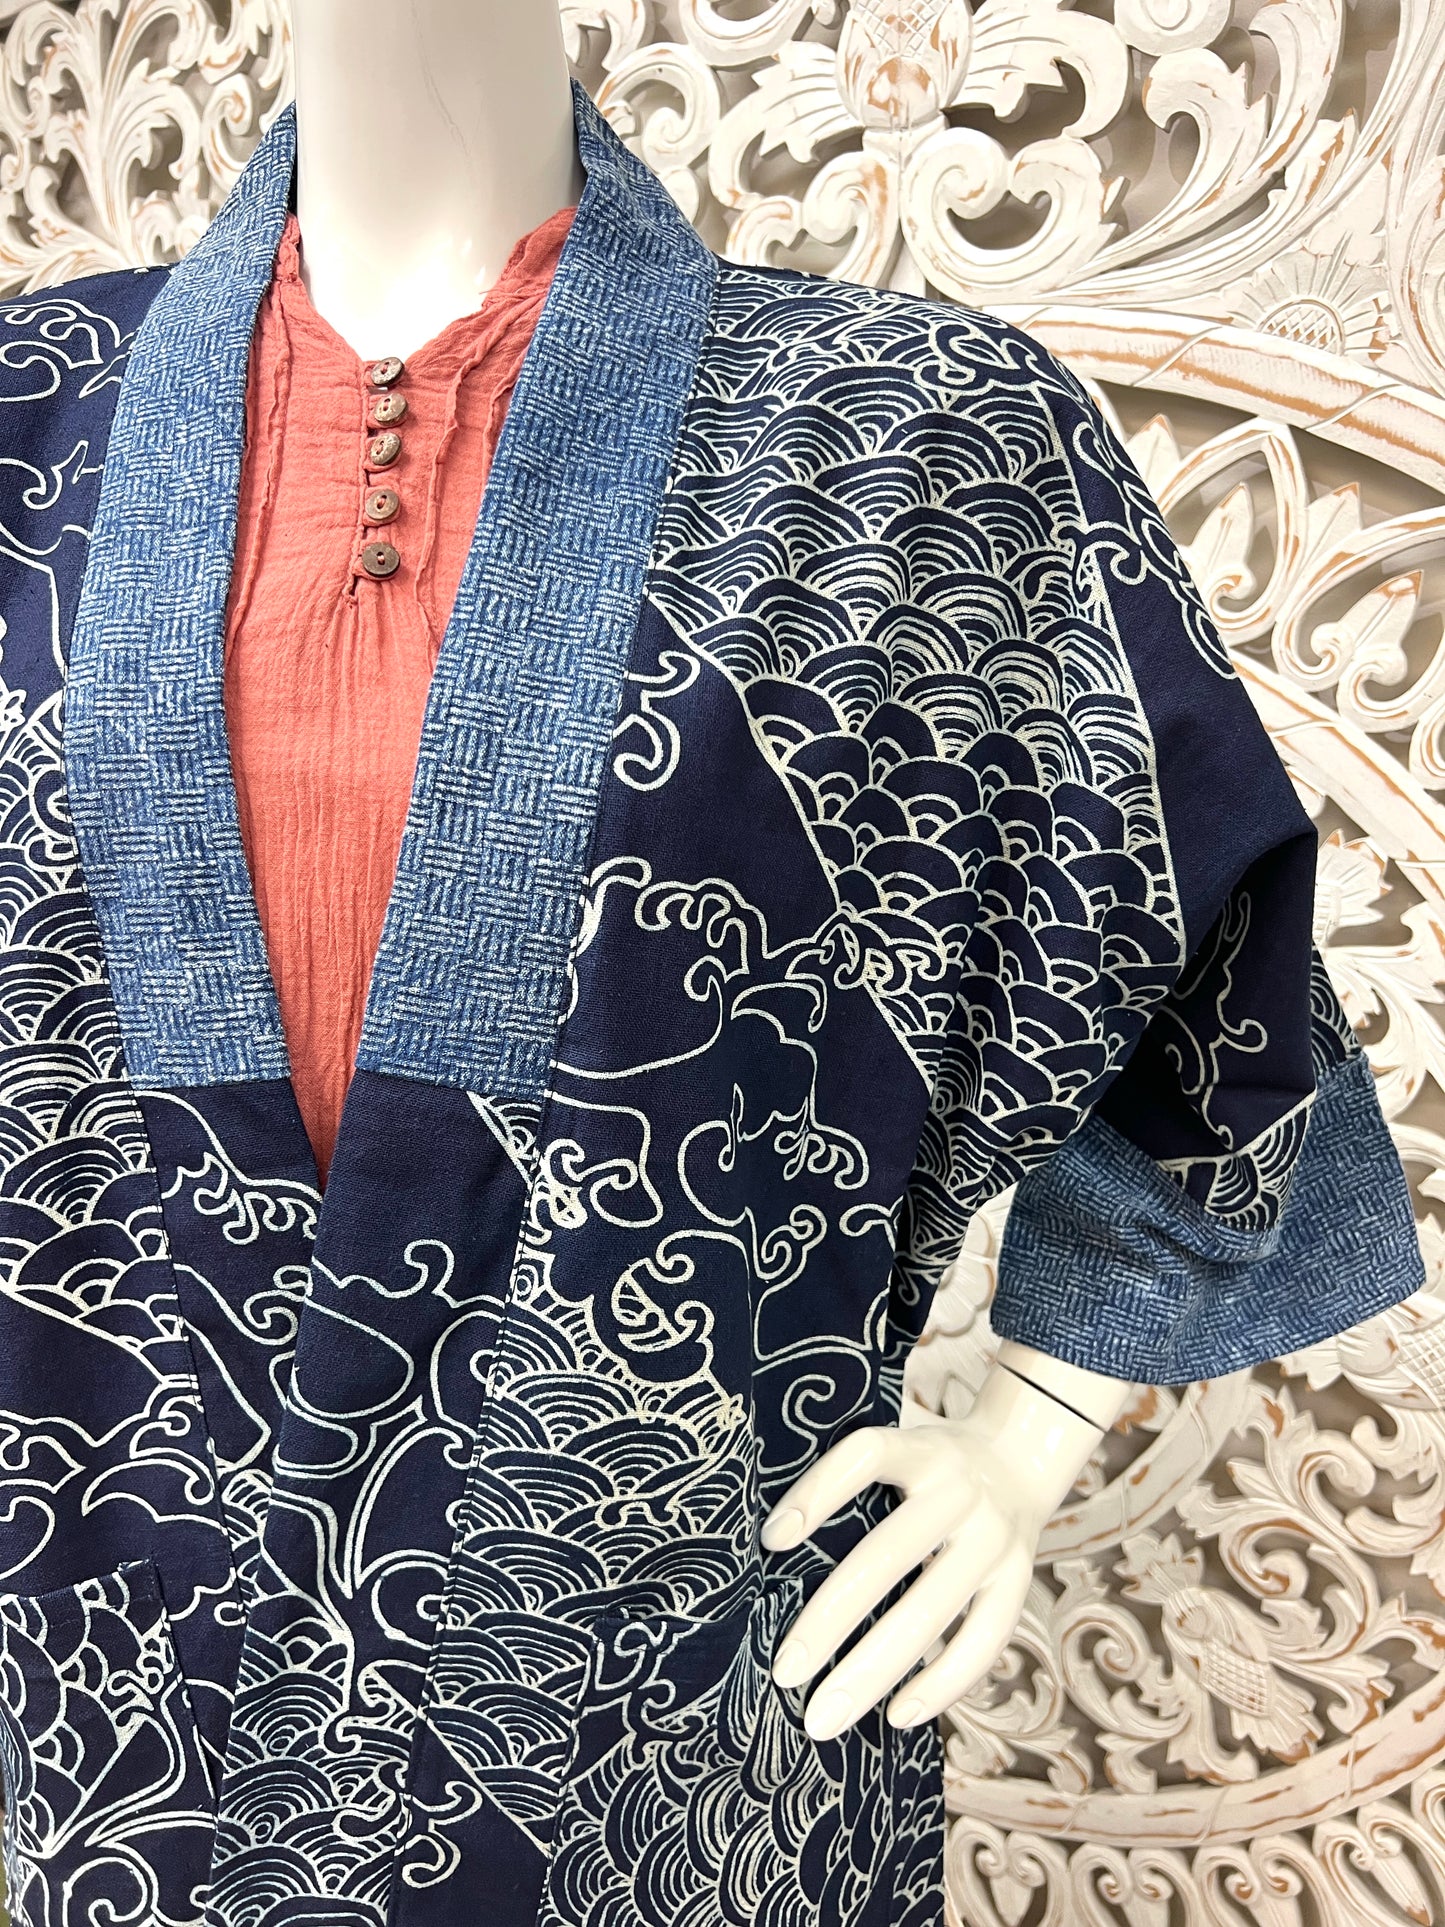 Indigo Block print Kimonos